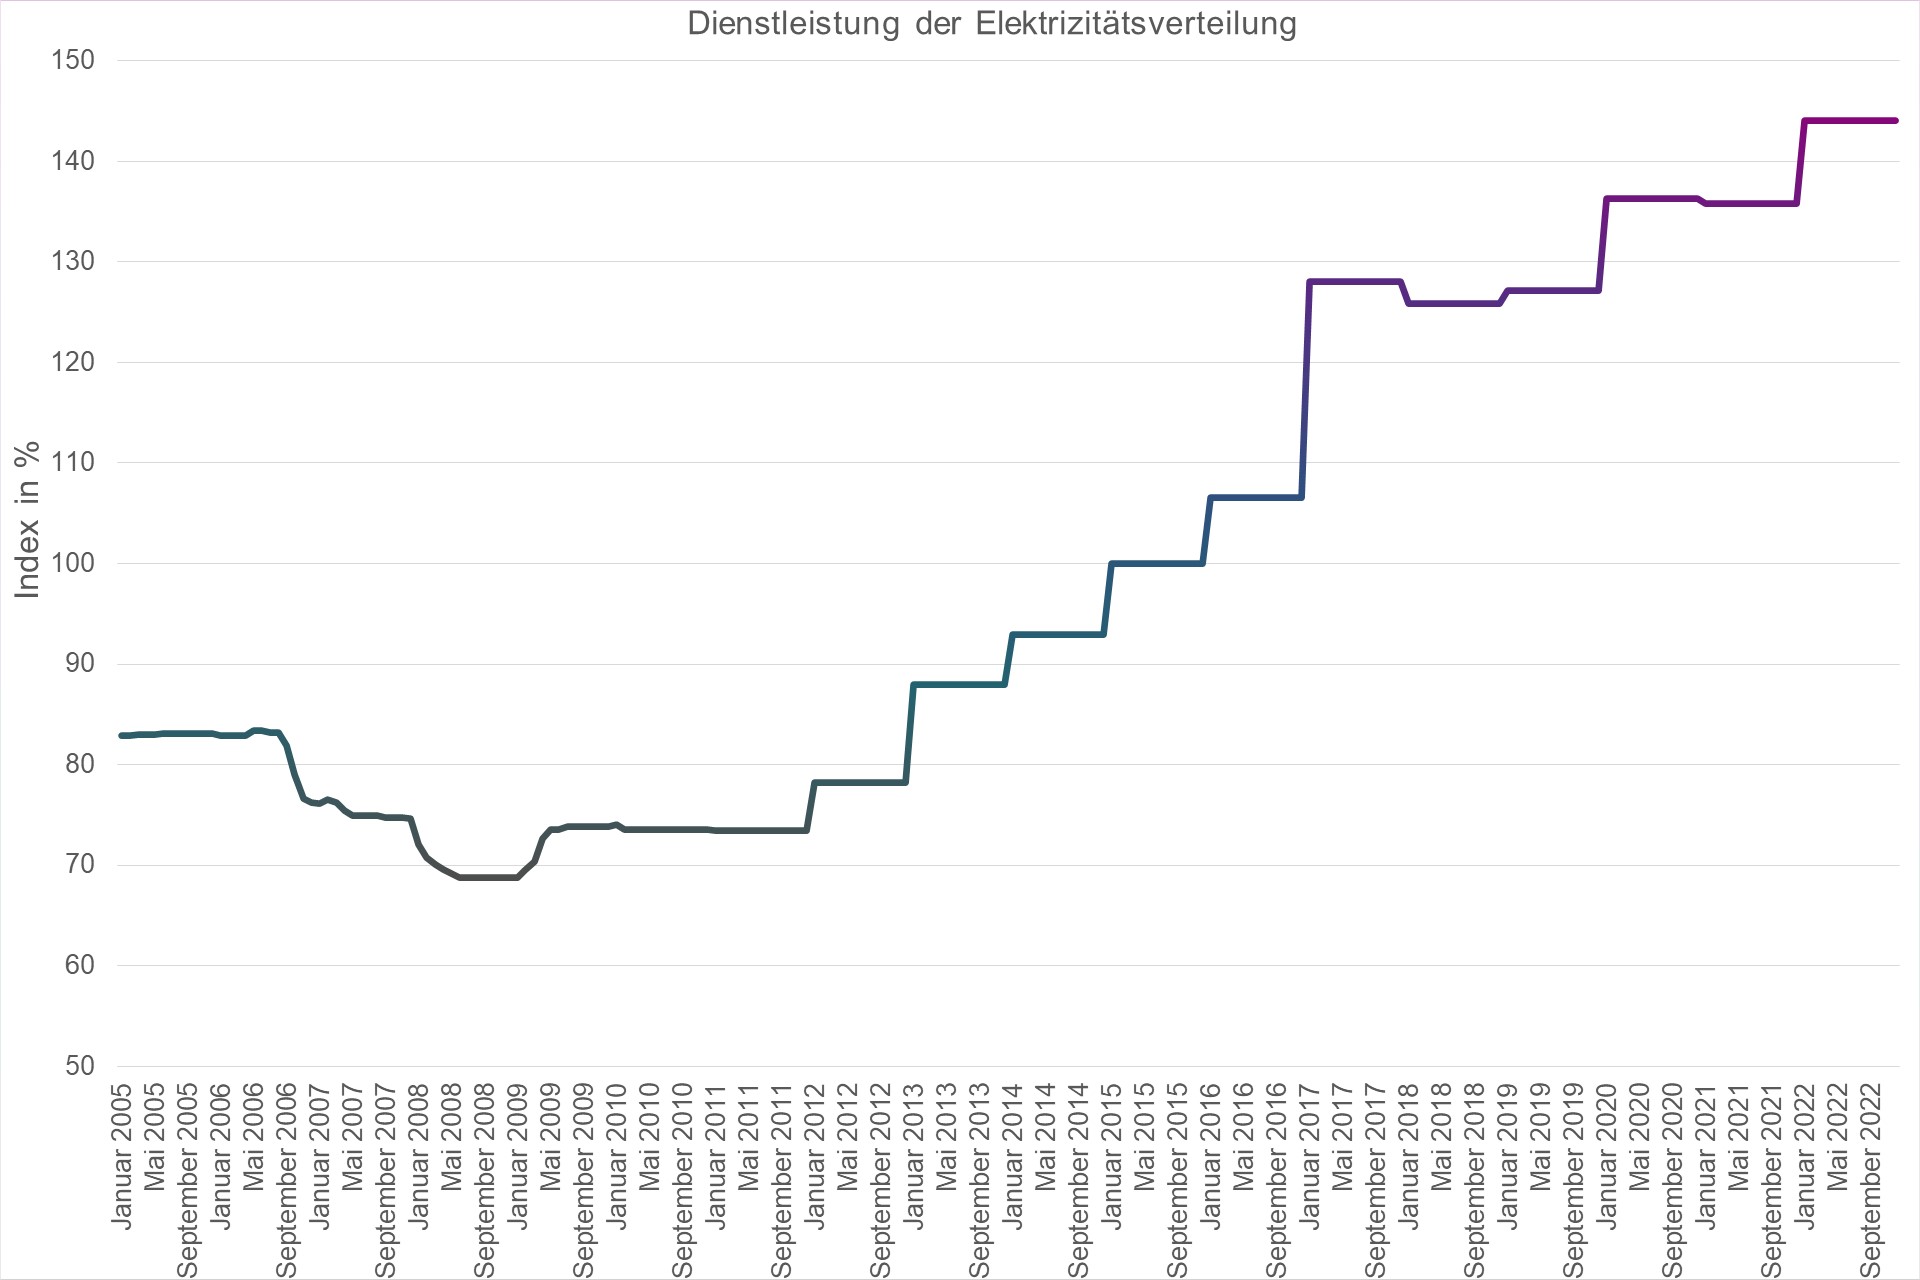 Grafik Preisindex Dienstleistung der Elektrizitätsverteilung